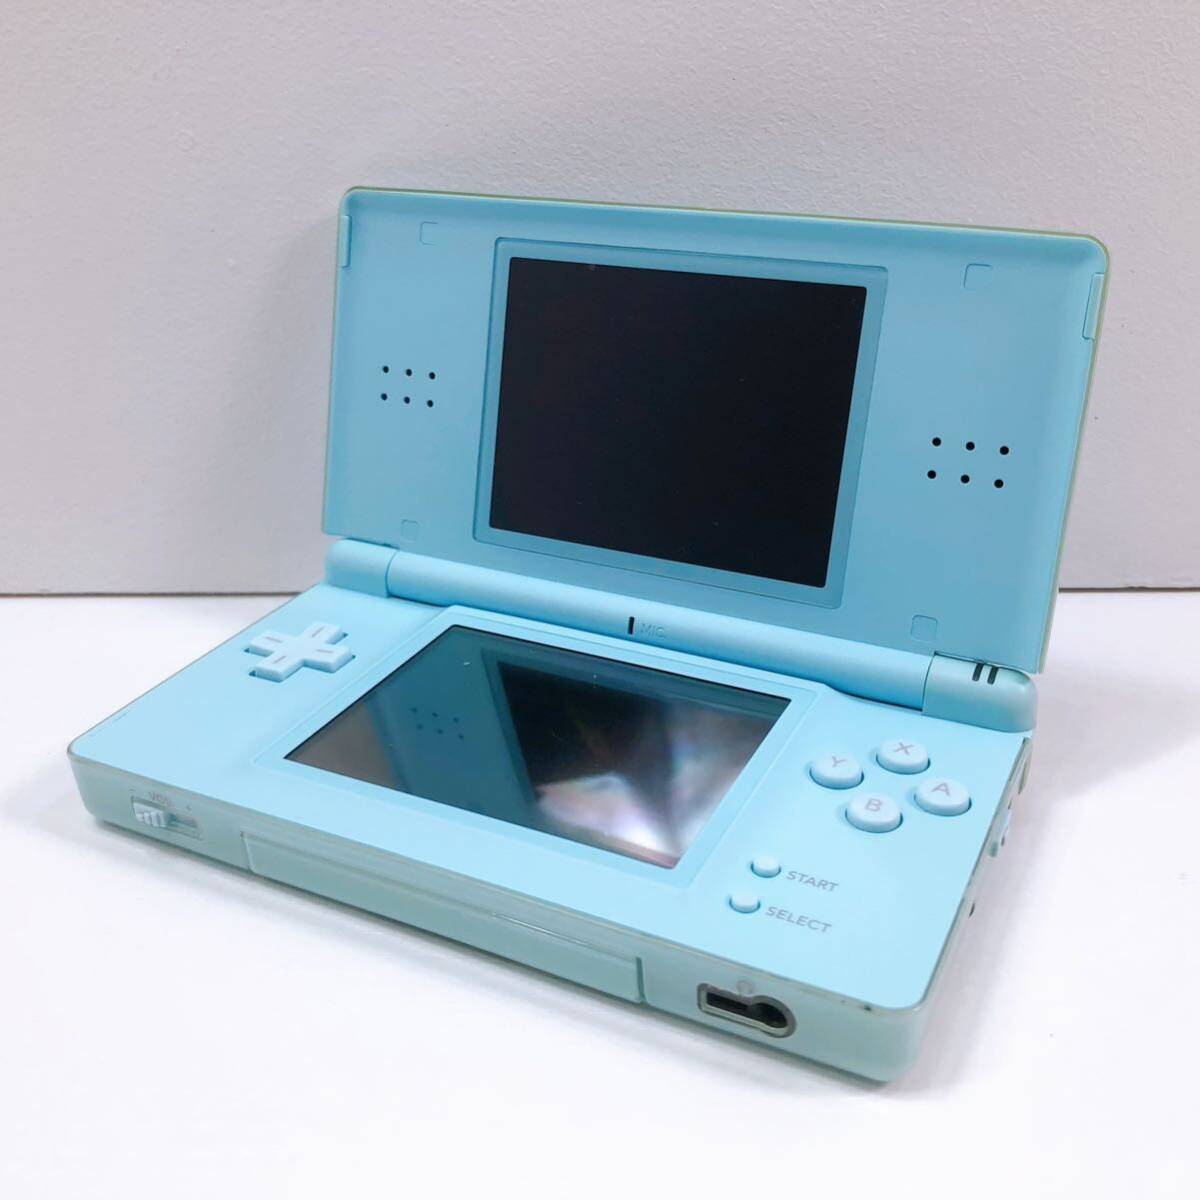 316【中古】Nintendo DS Lite 本体 USG-001 アイスブルー ニンテンドー DS ライト 任天堂 タッチペン付き 動作確認 初期化済み 現状品の画像1